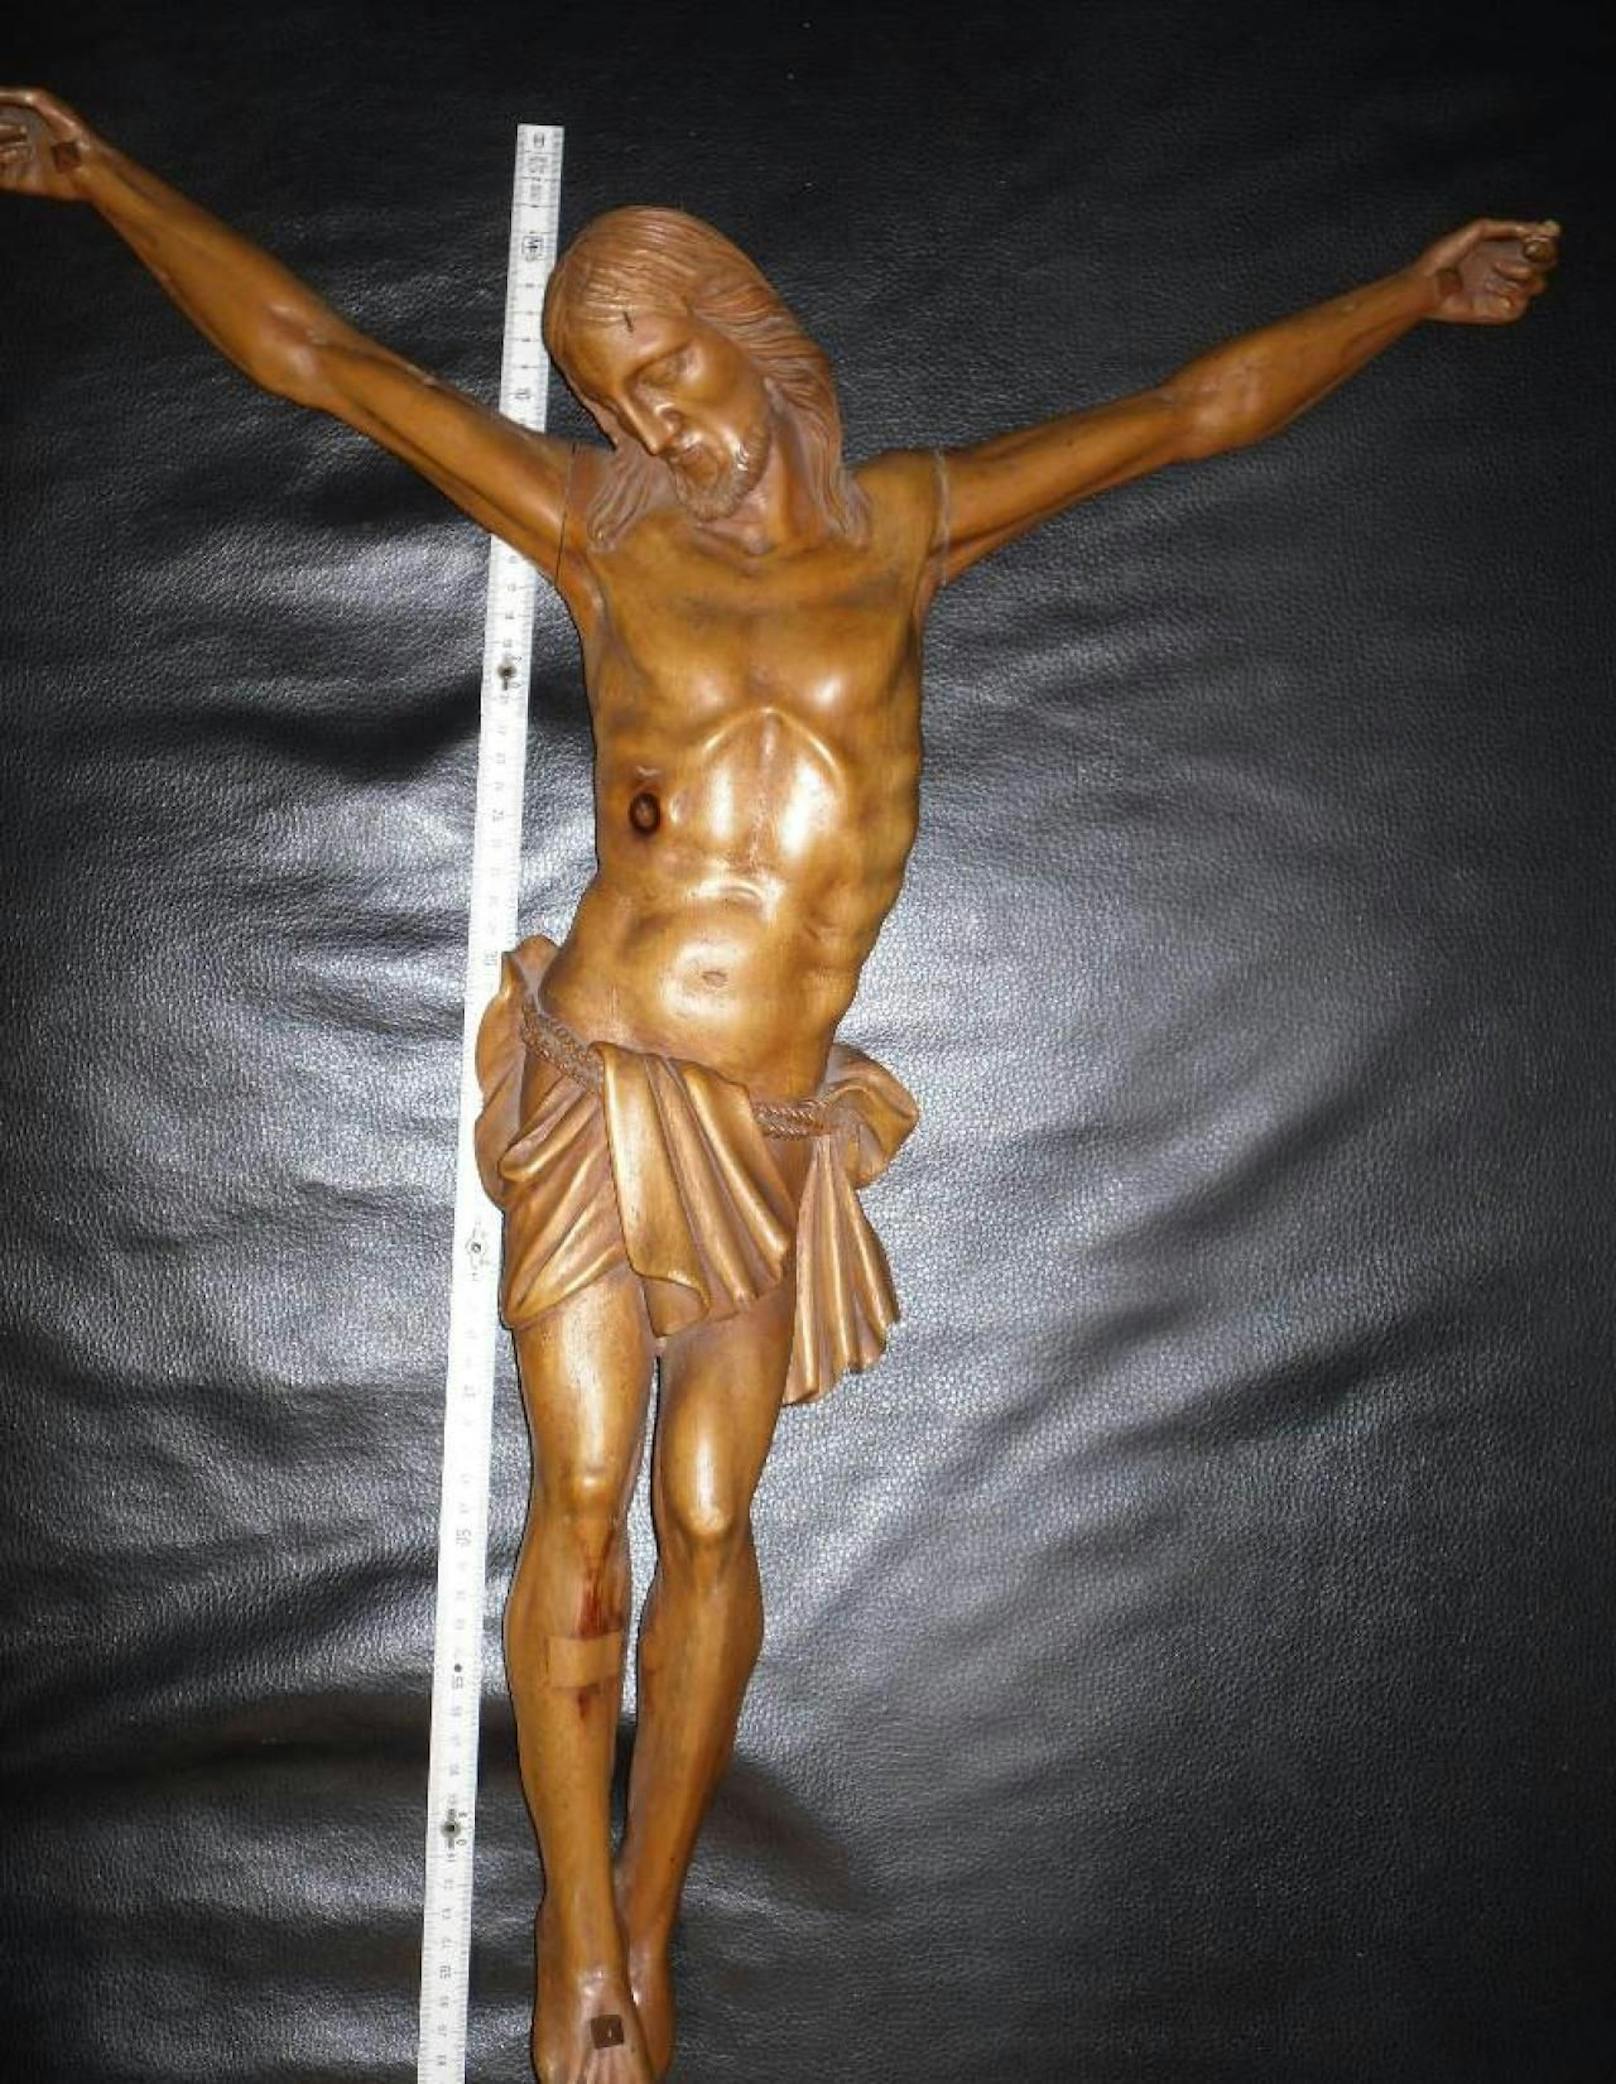 Diese Holzstatue, Teil eines Kruzifix', wurde am 13. November aus einer Kirche in Ottakring gestohlen.